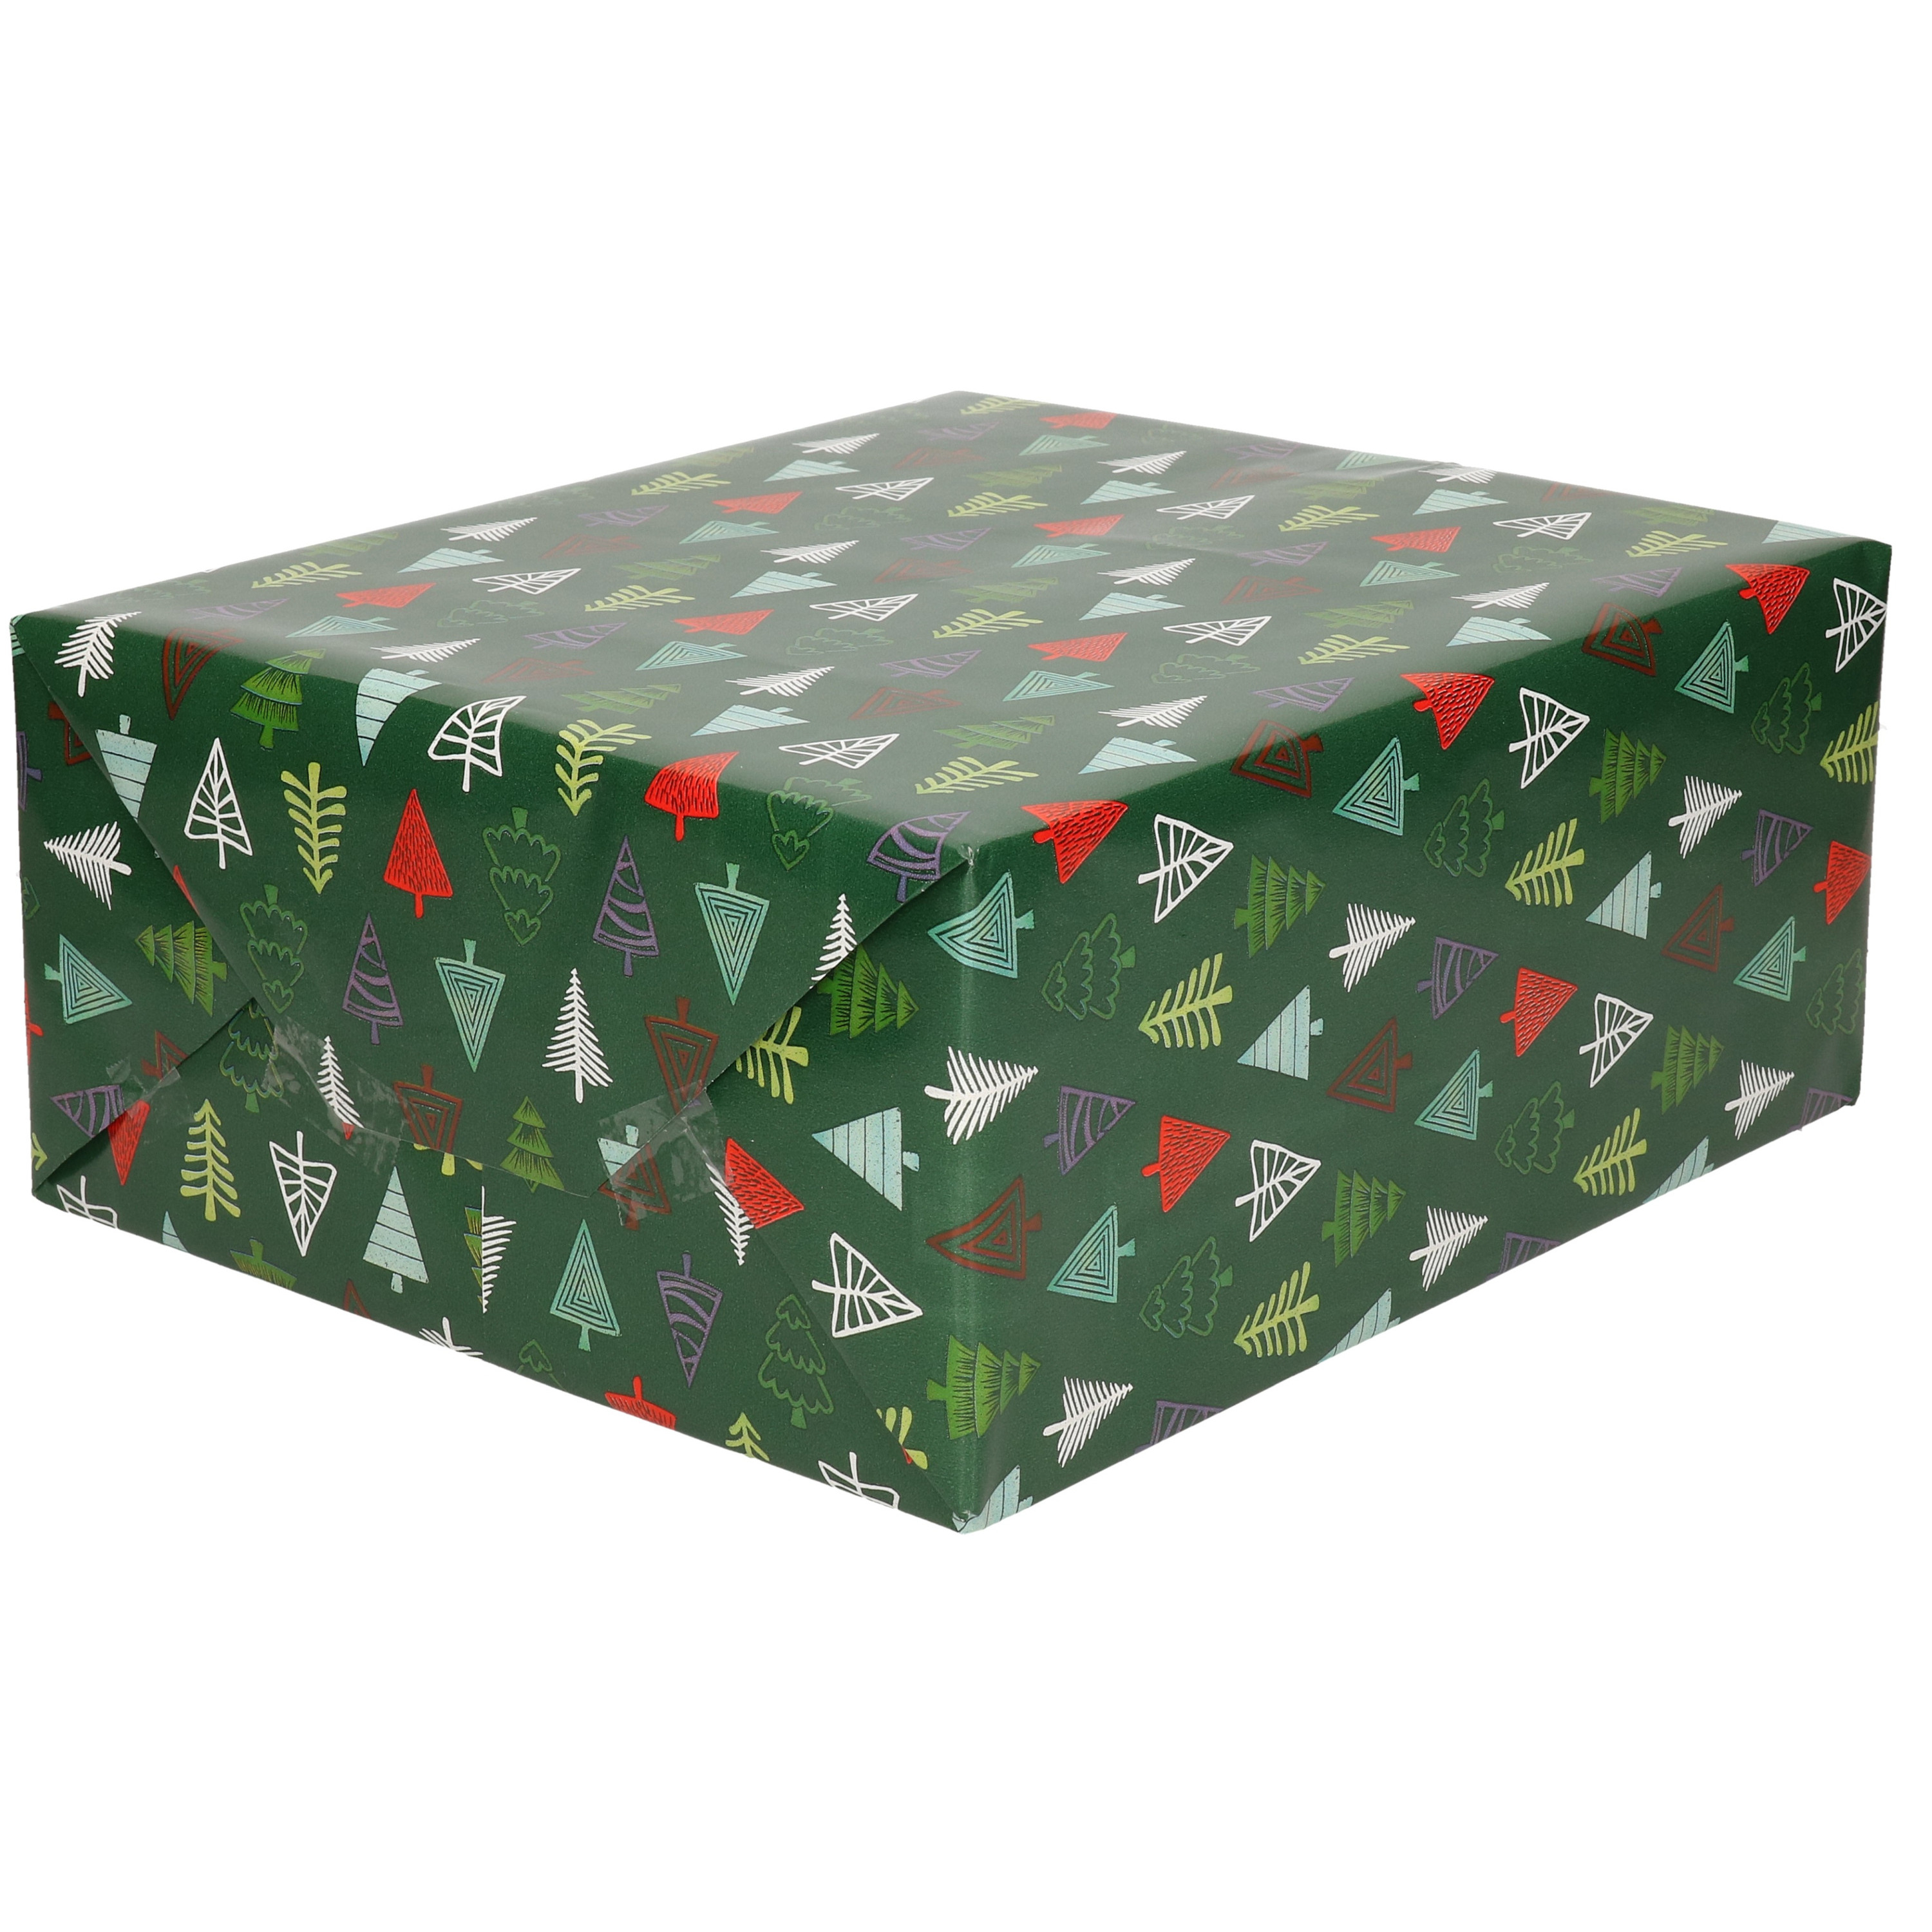 1x Rollen Kerst inpakpapier/cadeaupapier donkergroen met bomen 2,5 x 0,7 m